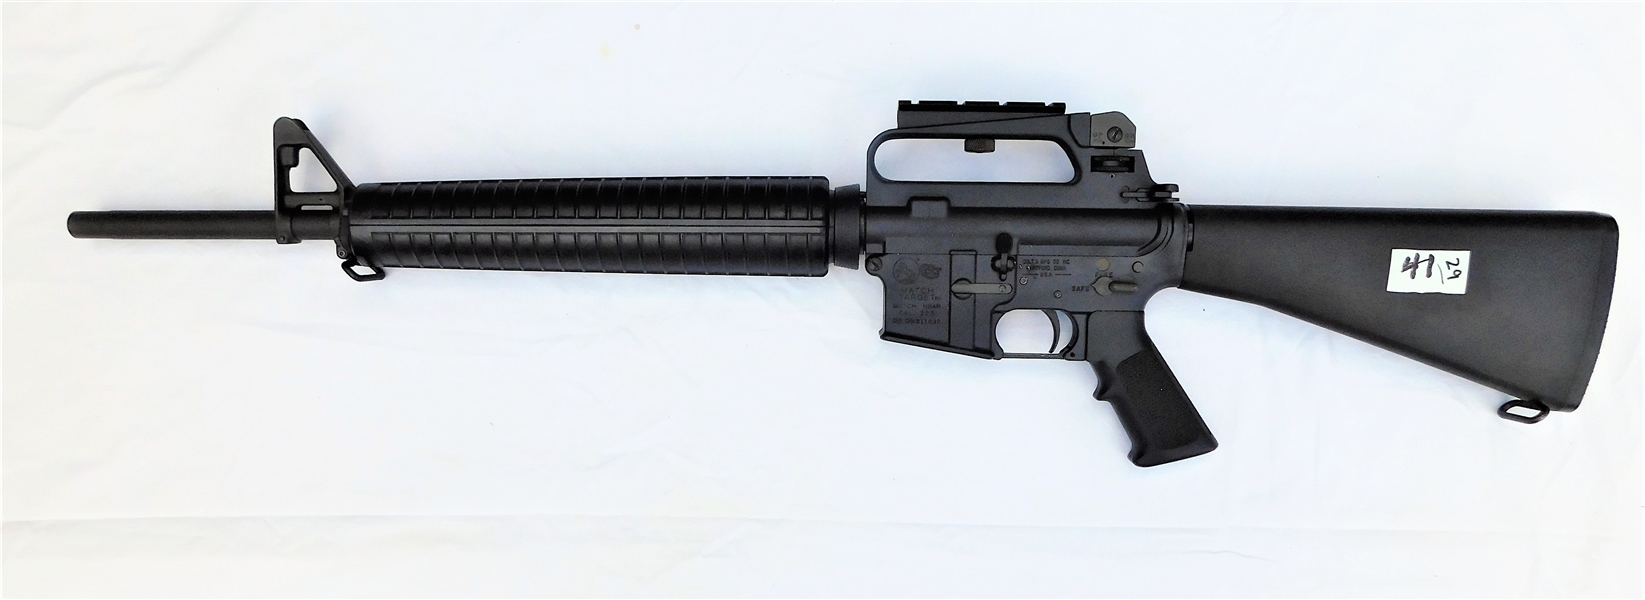 Colt AR15 Match - Match HBAR Target .223 Caliber Semi-Automatic Rifle Barrel Marked C MP 5.56 NATO 1/7 HBAR